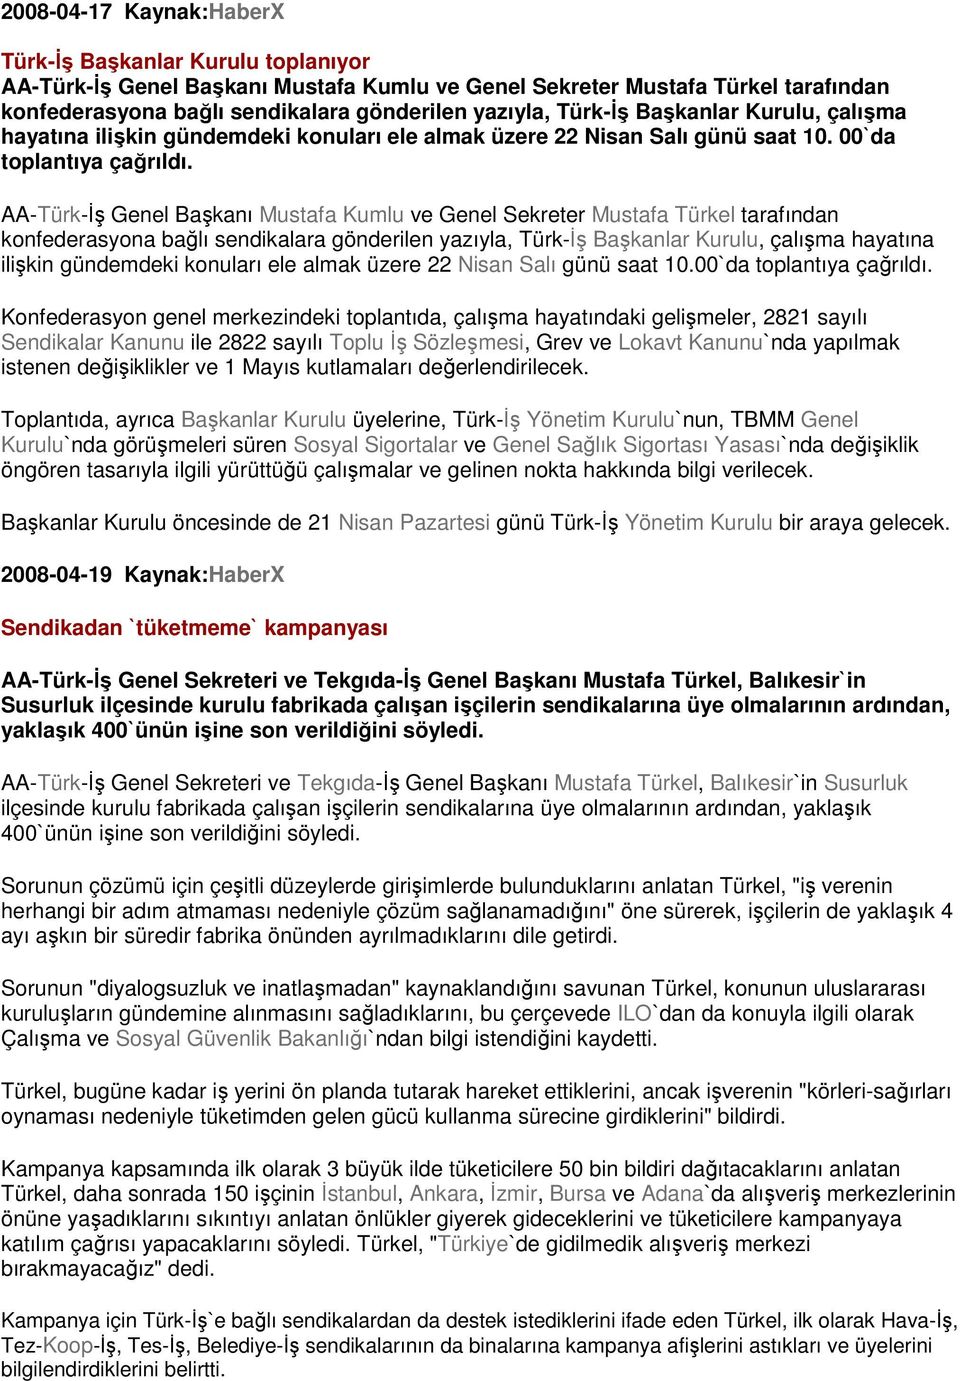 AA-Türk-İş Genel Başkanı Mustafa Kumlu ve Genel Sekreter Mustafa Türkel tarafından konfederasyona bağlı sendikalara gönderilen yazıyla, Türk-İş Başkanlar Kurulu, çalışma hayatına ilişkin gündemdeki